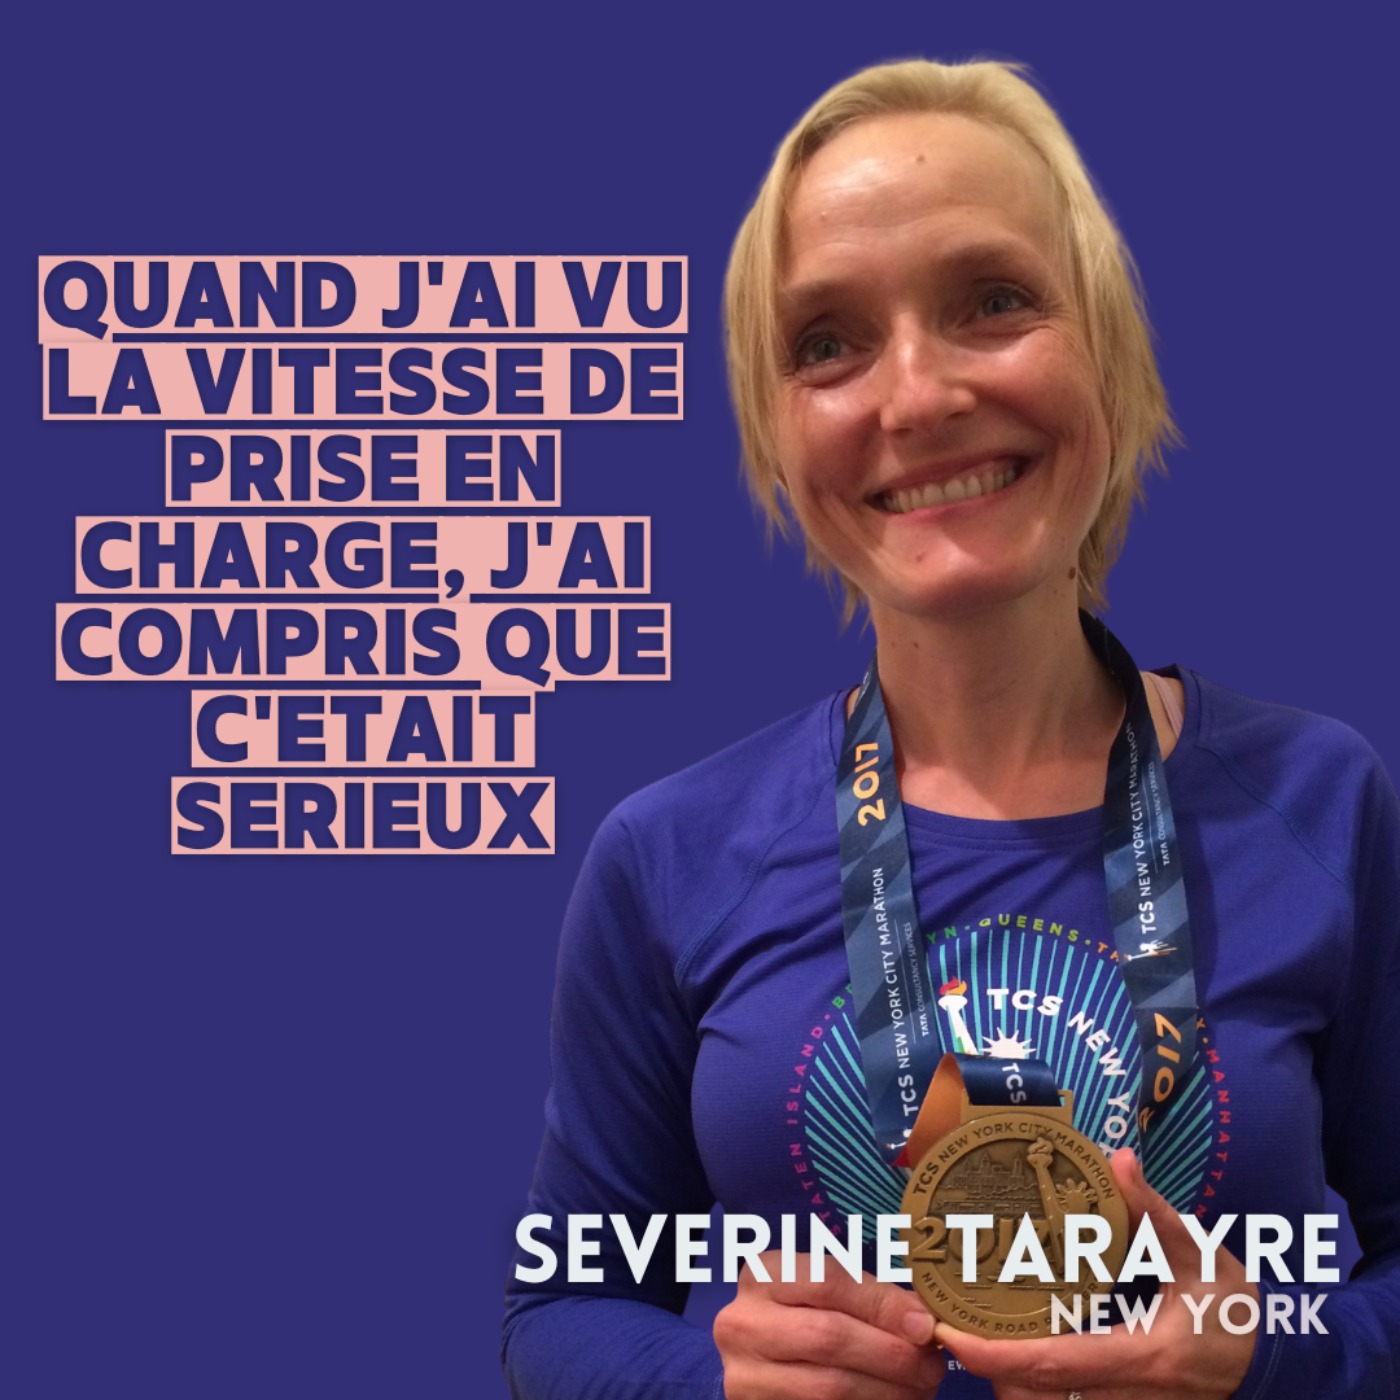 Séverine Tarayre : Quand j’ai vu la vitesse de ma prise en charge, j’ai compris que c’était sérieux